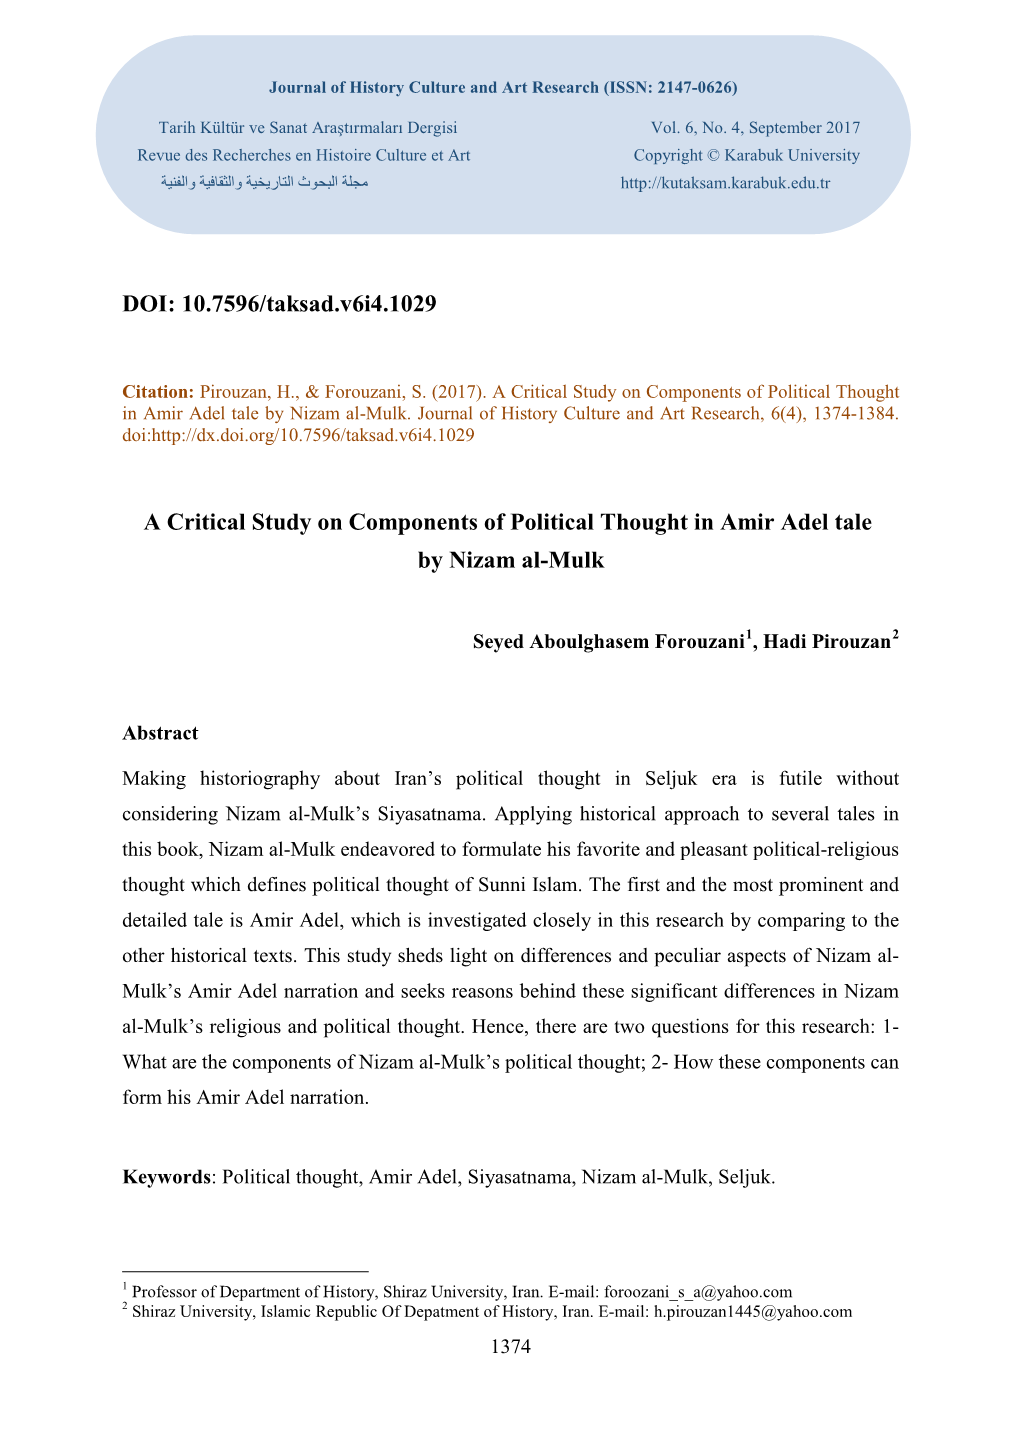 DOI: 10.7596/Taksad.V6i4.1029 a Critical Study on Components Of